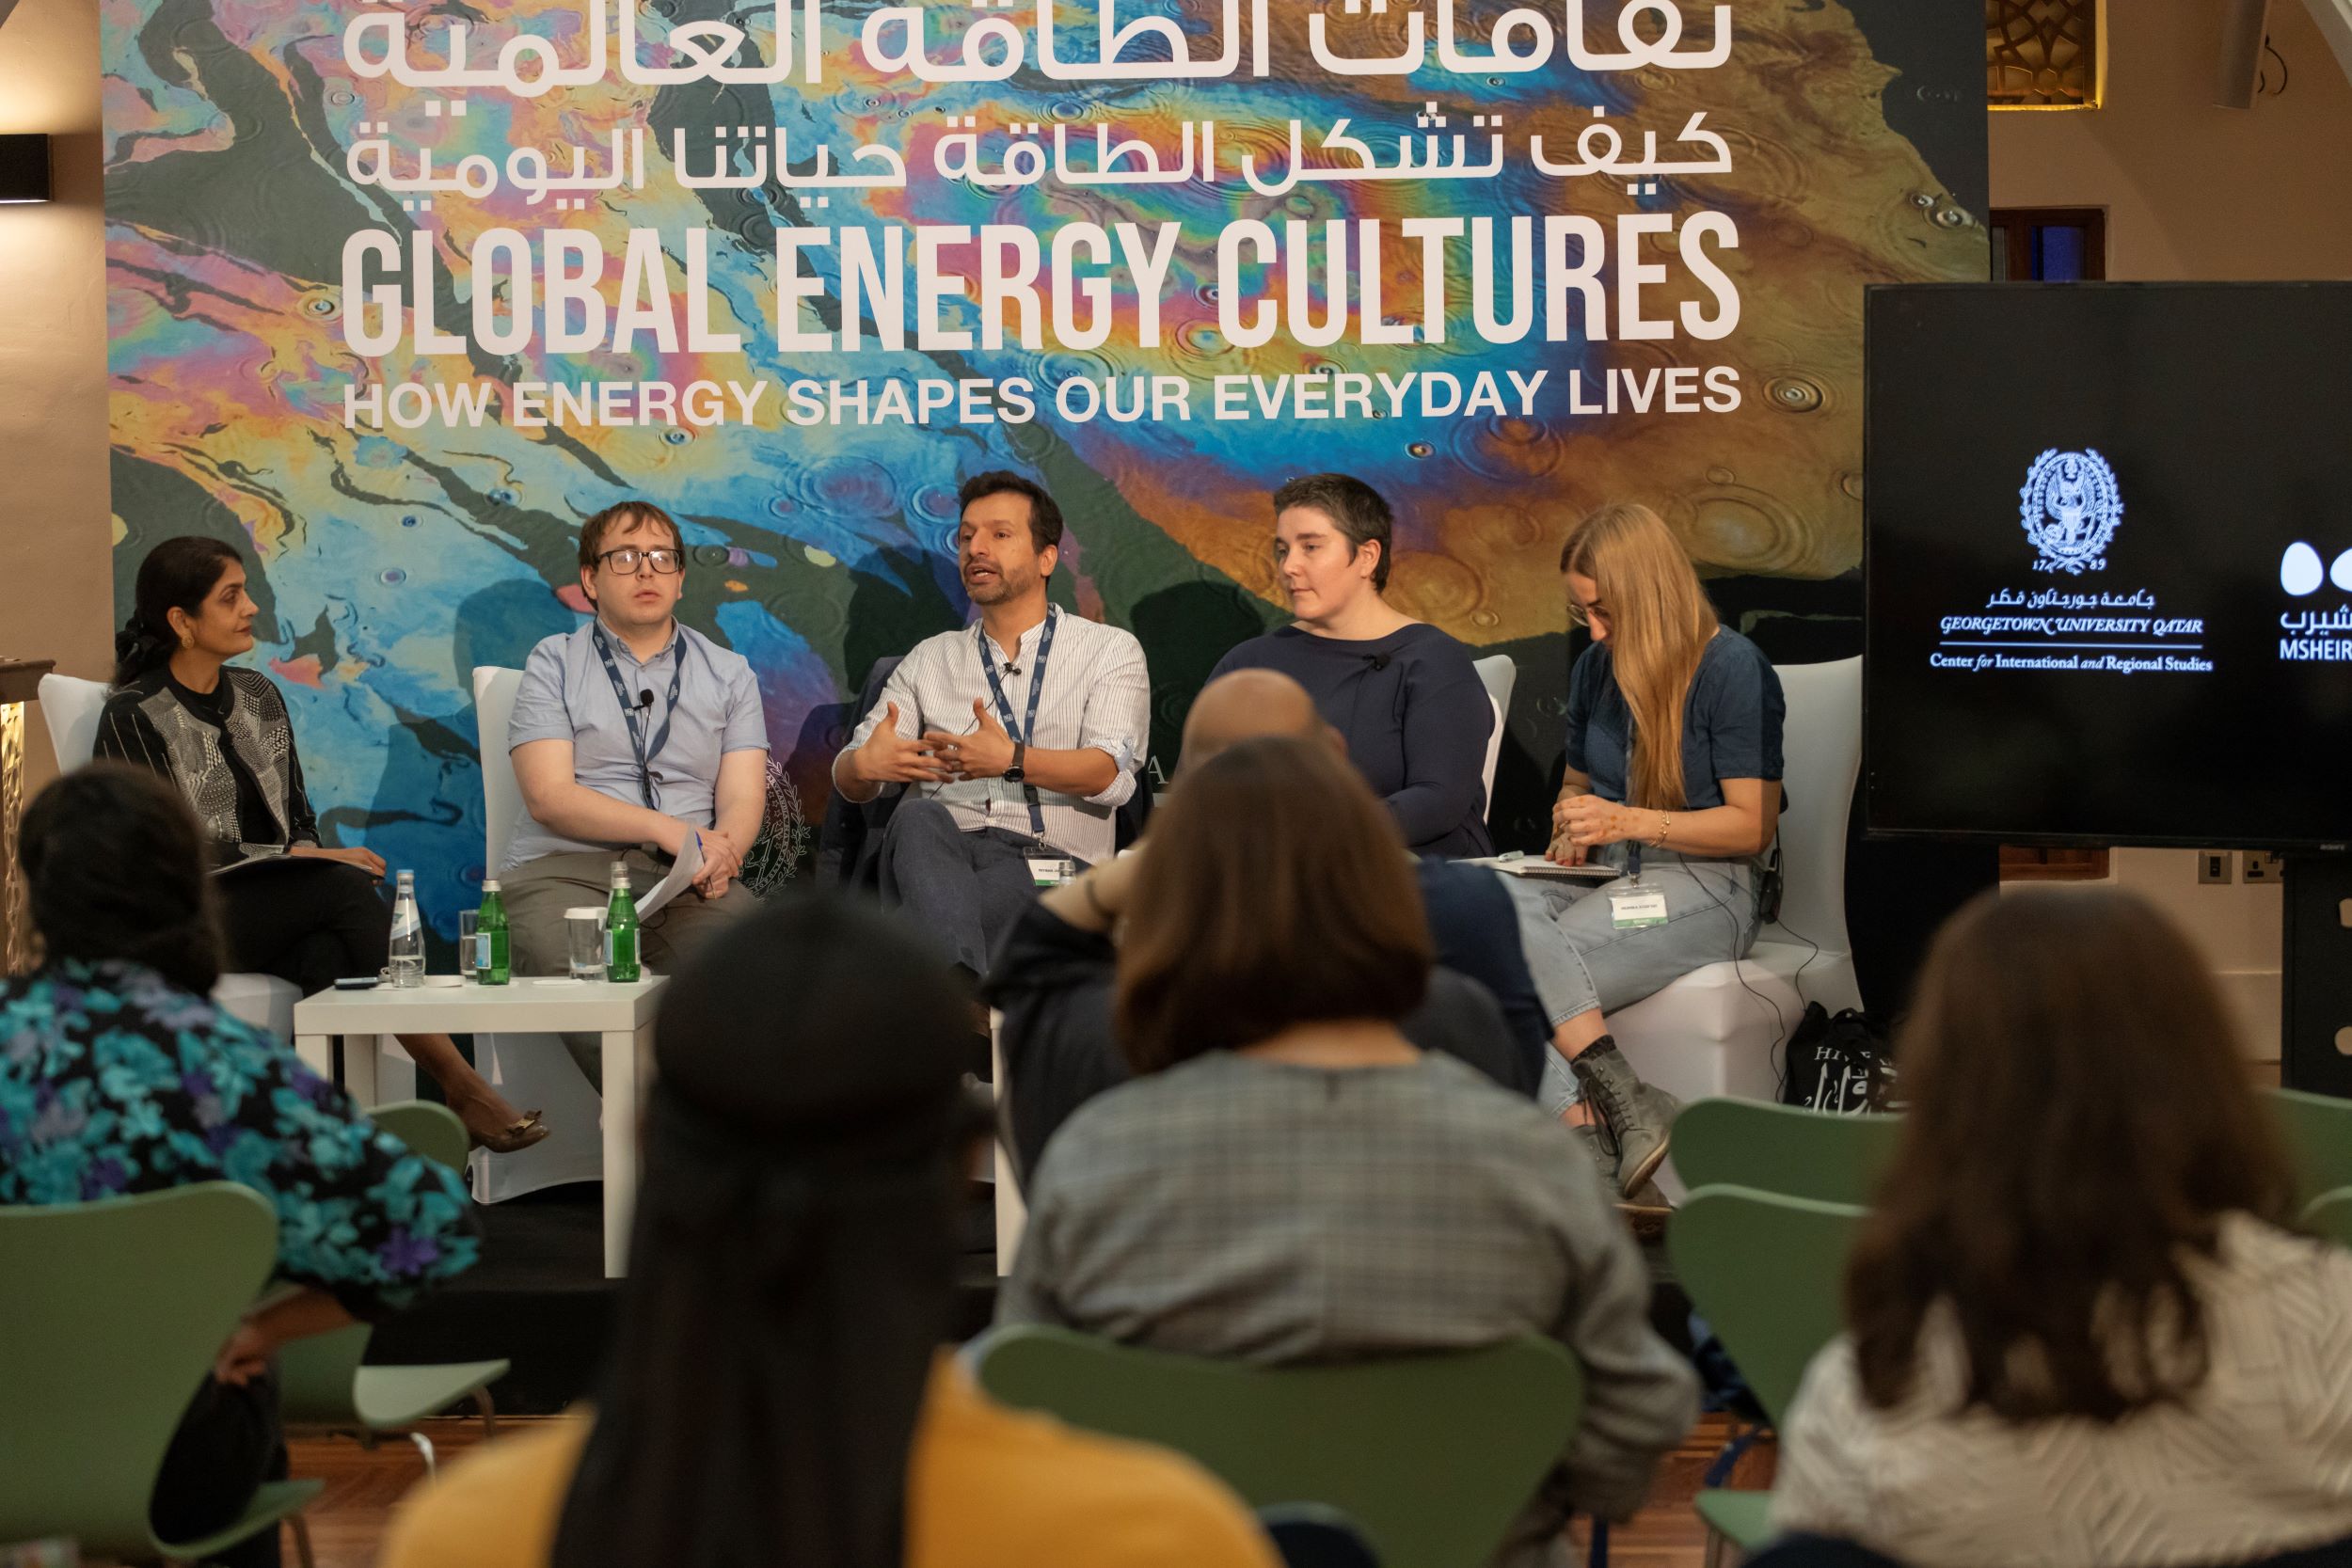 منتدى "ثقافات الطاقة العالمية" يطلق حواراً حول دور الطاقة في رسم مستقبلٍ مستدام